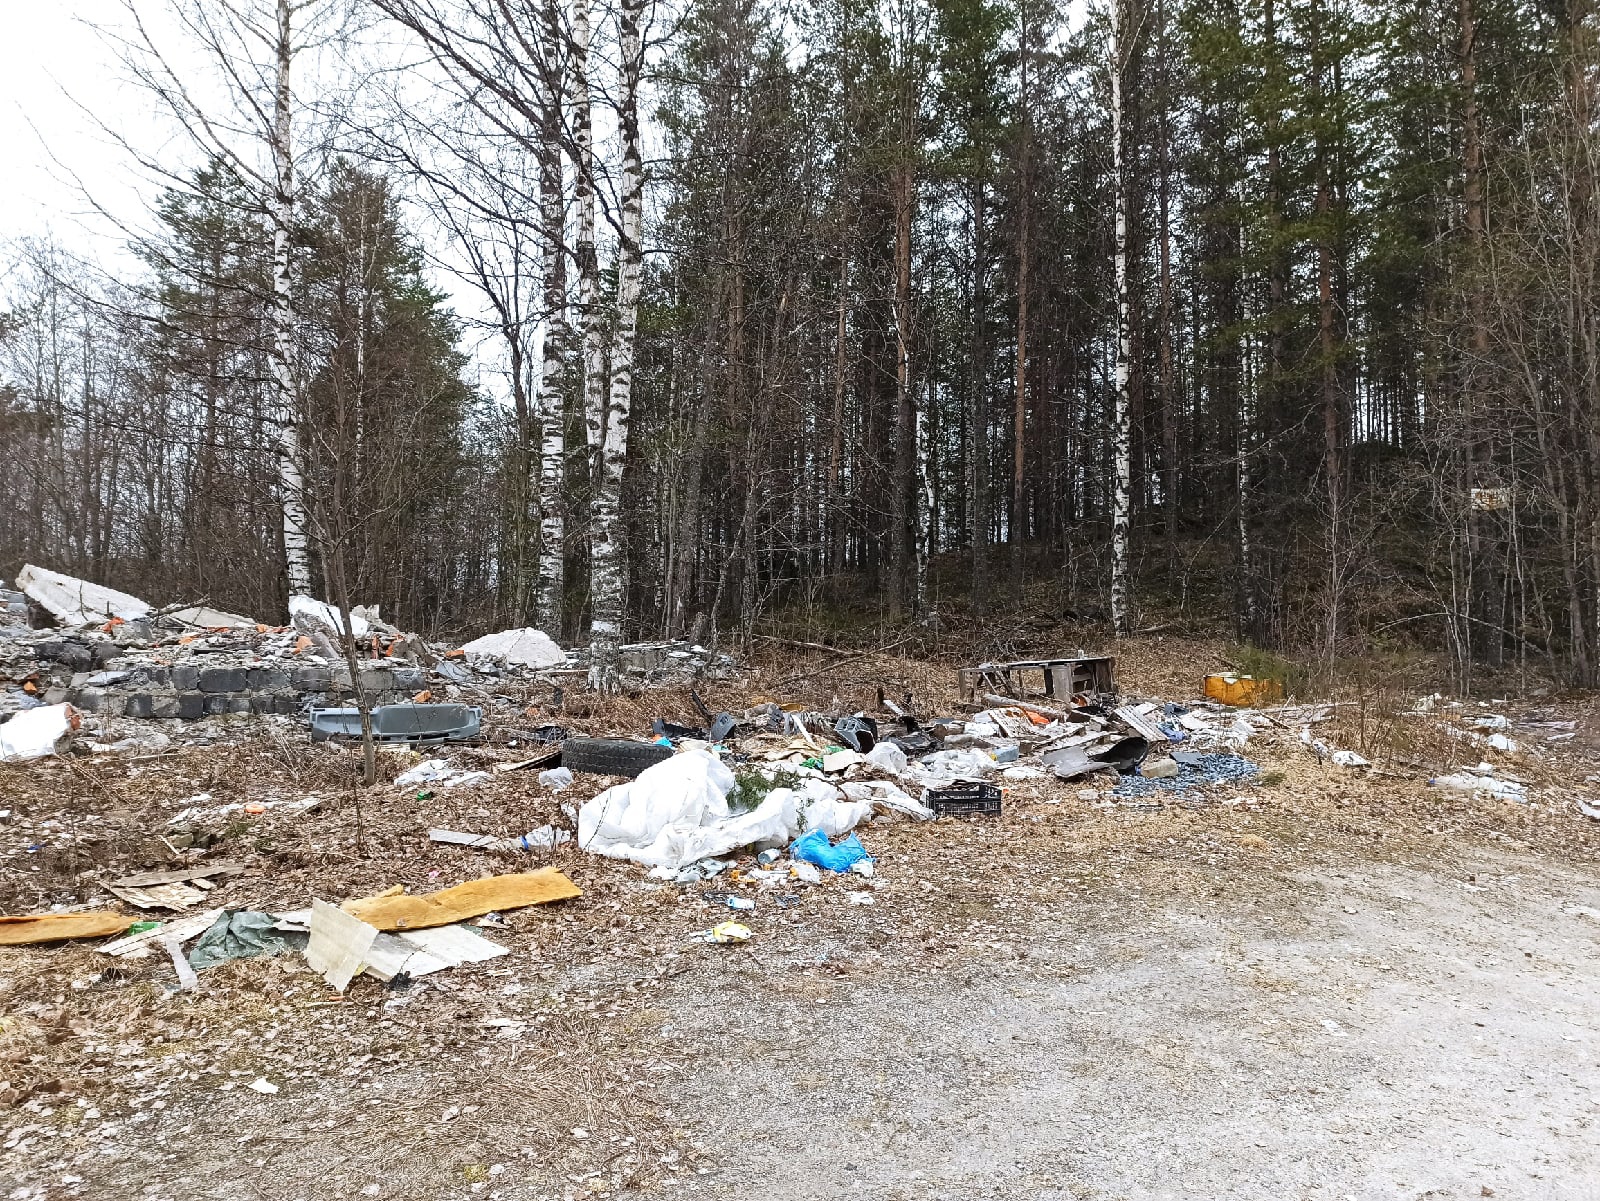  

«Моральные уроды вываливают мусор»: жители города в Карелии жалуются на стихийную свалку (ФОТО)